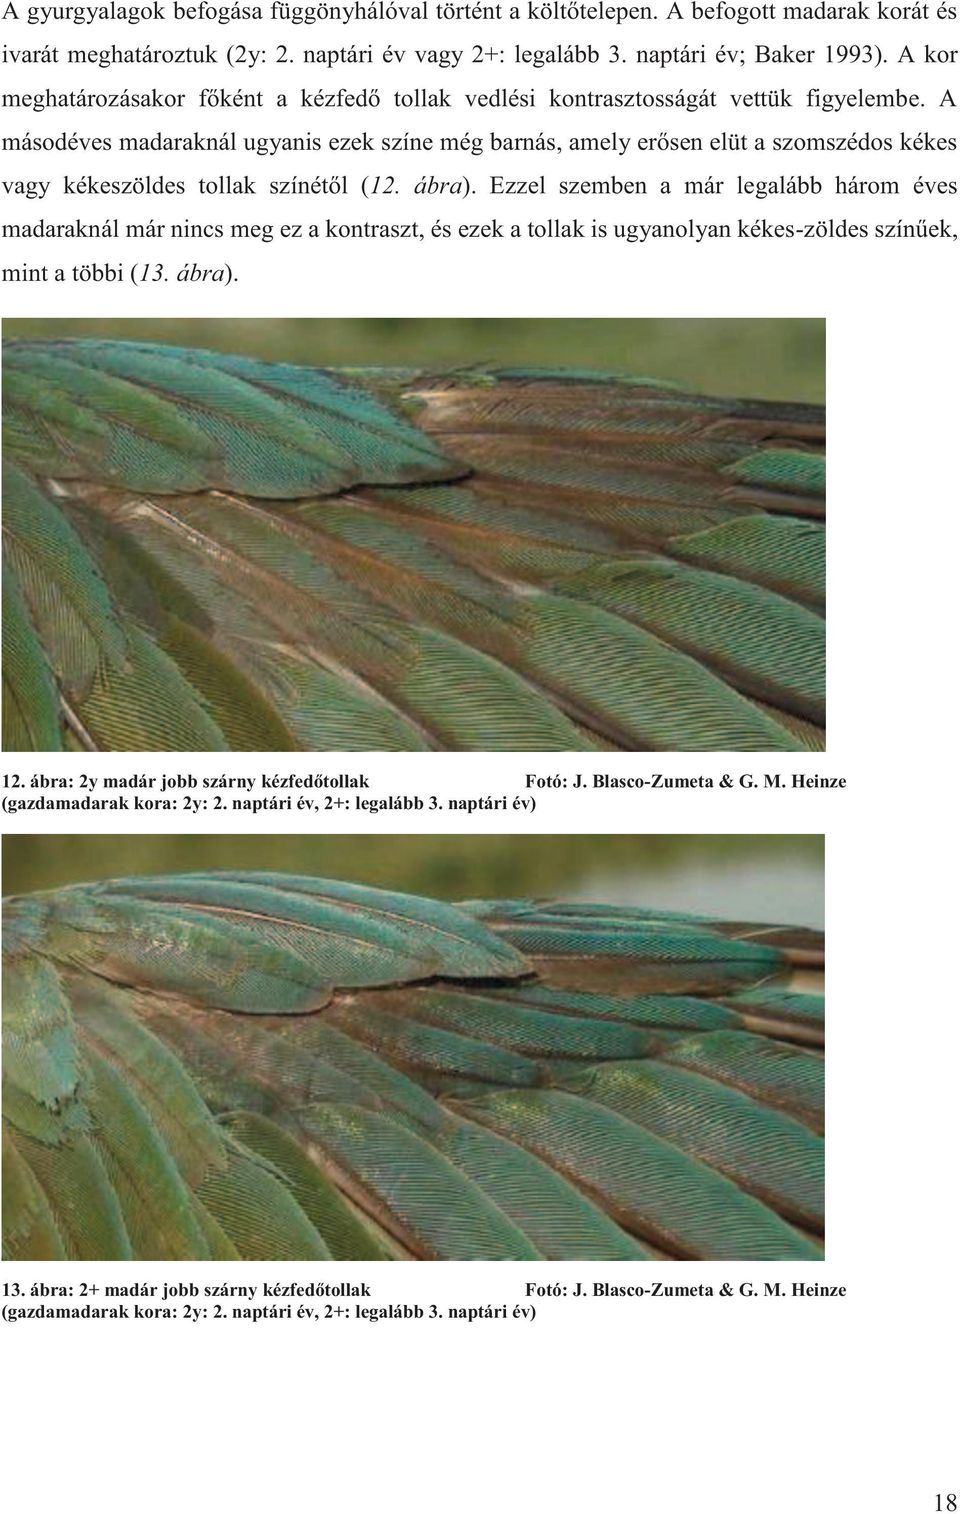 A másodéves madaraknál ugyanis ezek színe még barnás, amely erősen elüt a szomszédos kékes vagy kékeszöldes tollak színétől (12. ábra).